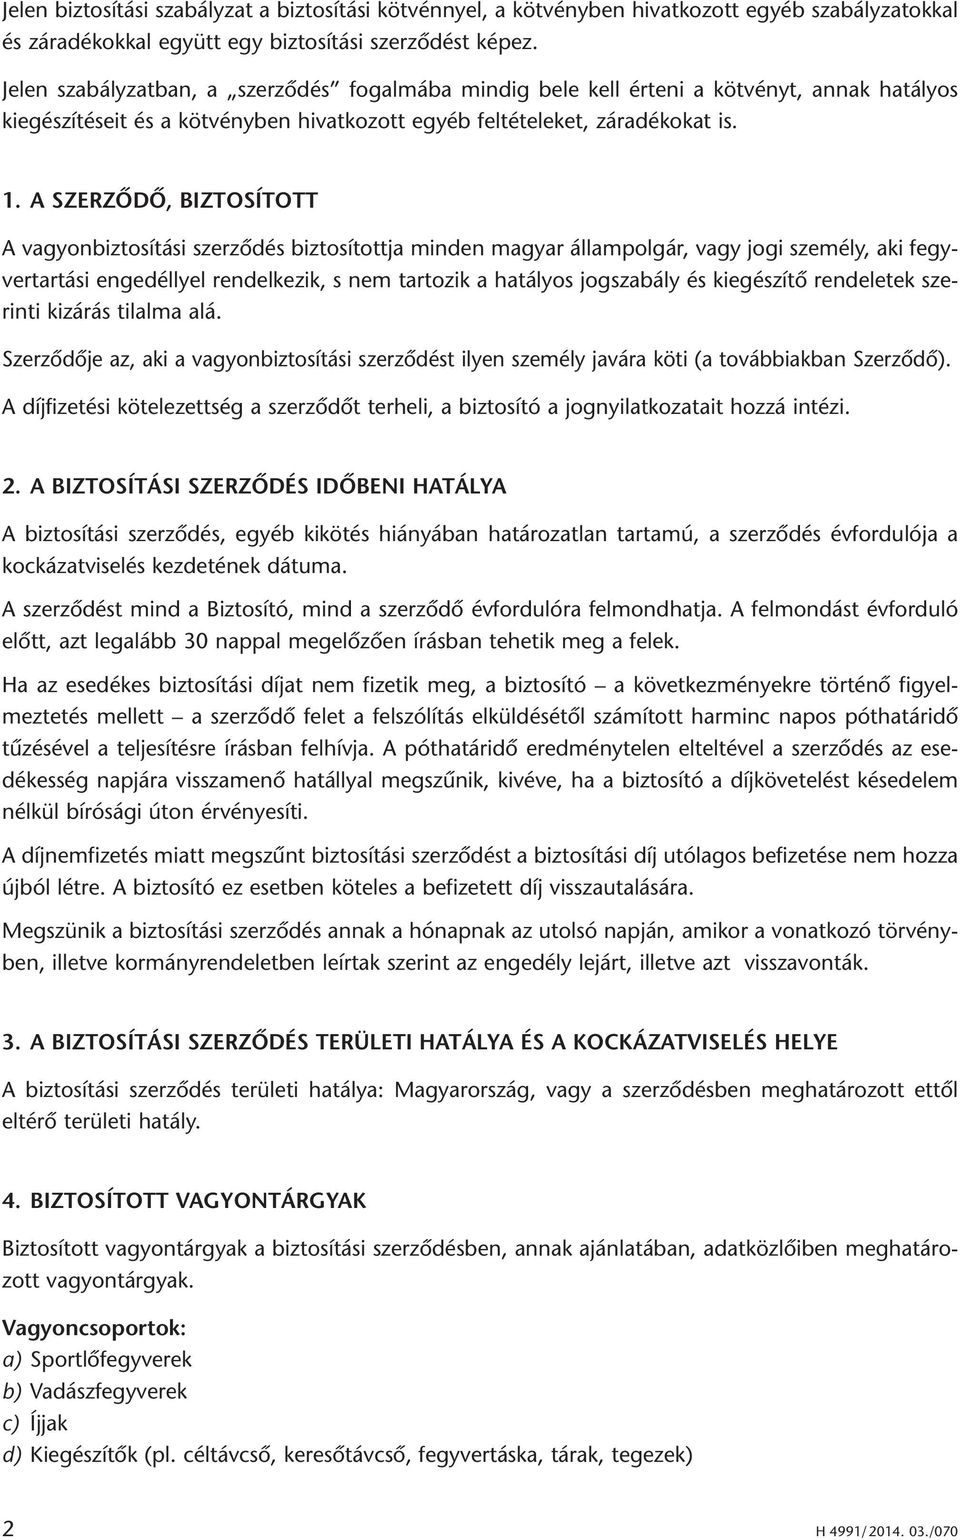 A SZERZÕDÕ, BIZTOSÍTOTT A vagyonbiztosítási szerződés biztosítottja minden magyar állampolgár, vagy jogi személy, aki fegyvertartási engedéllyel rendelkezik, s nem tartozik a hatályos jogszabály és